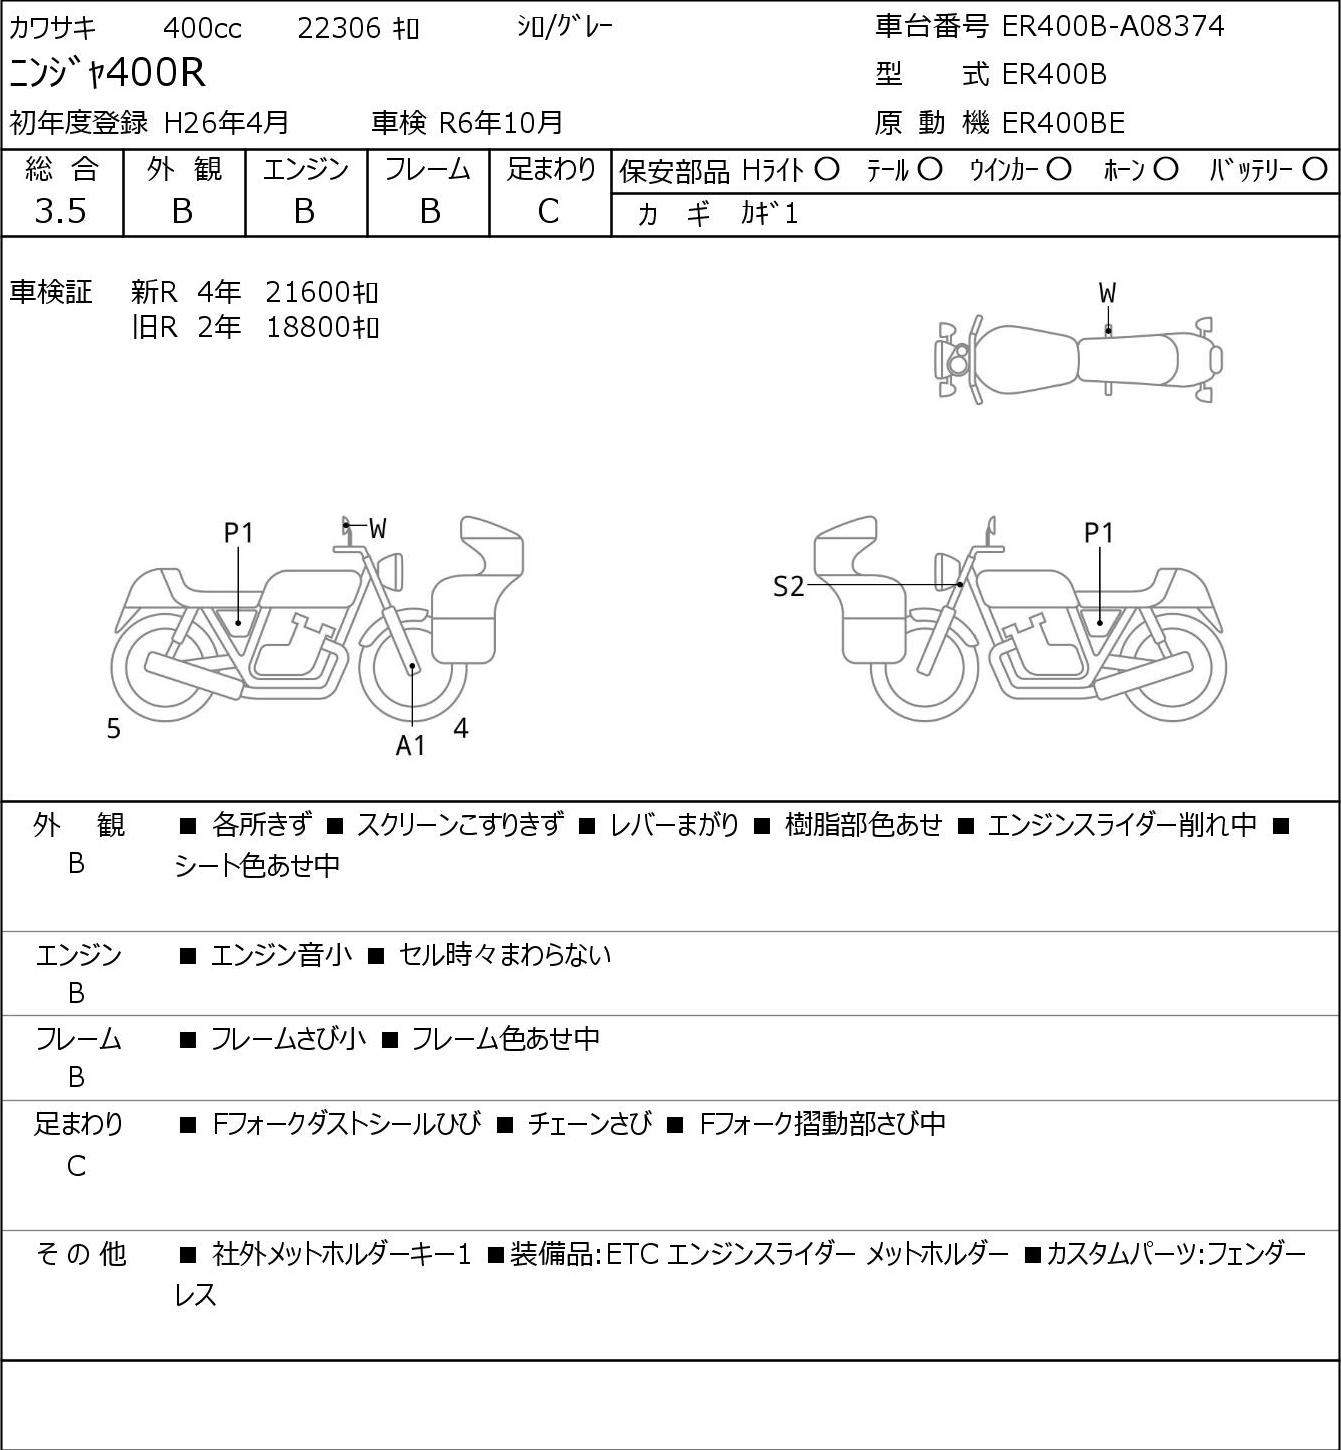 Kawasaki NINJA 400 R ER400B 2014г. 22306